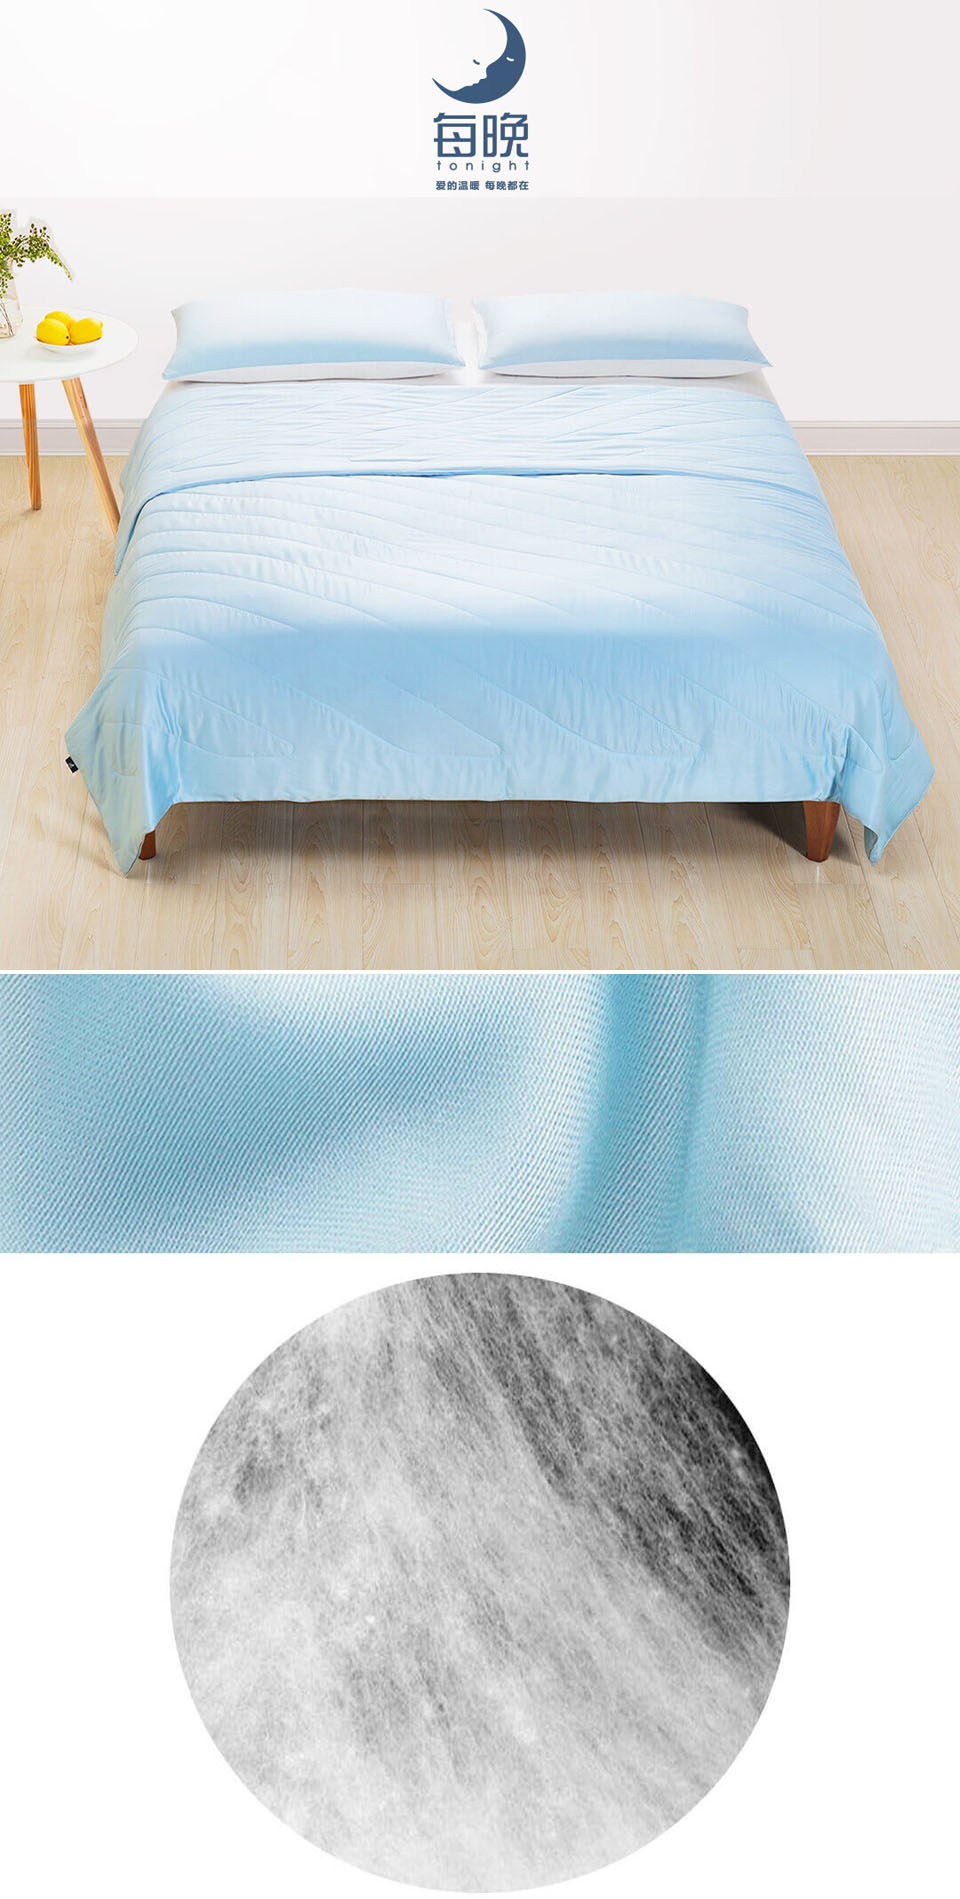 Одеяло Tonight bed linens отличительные особенности